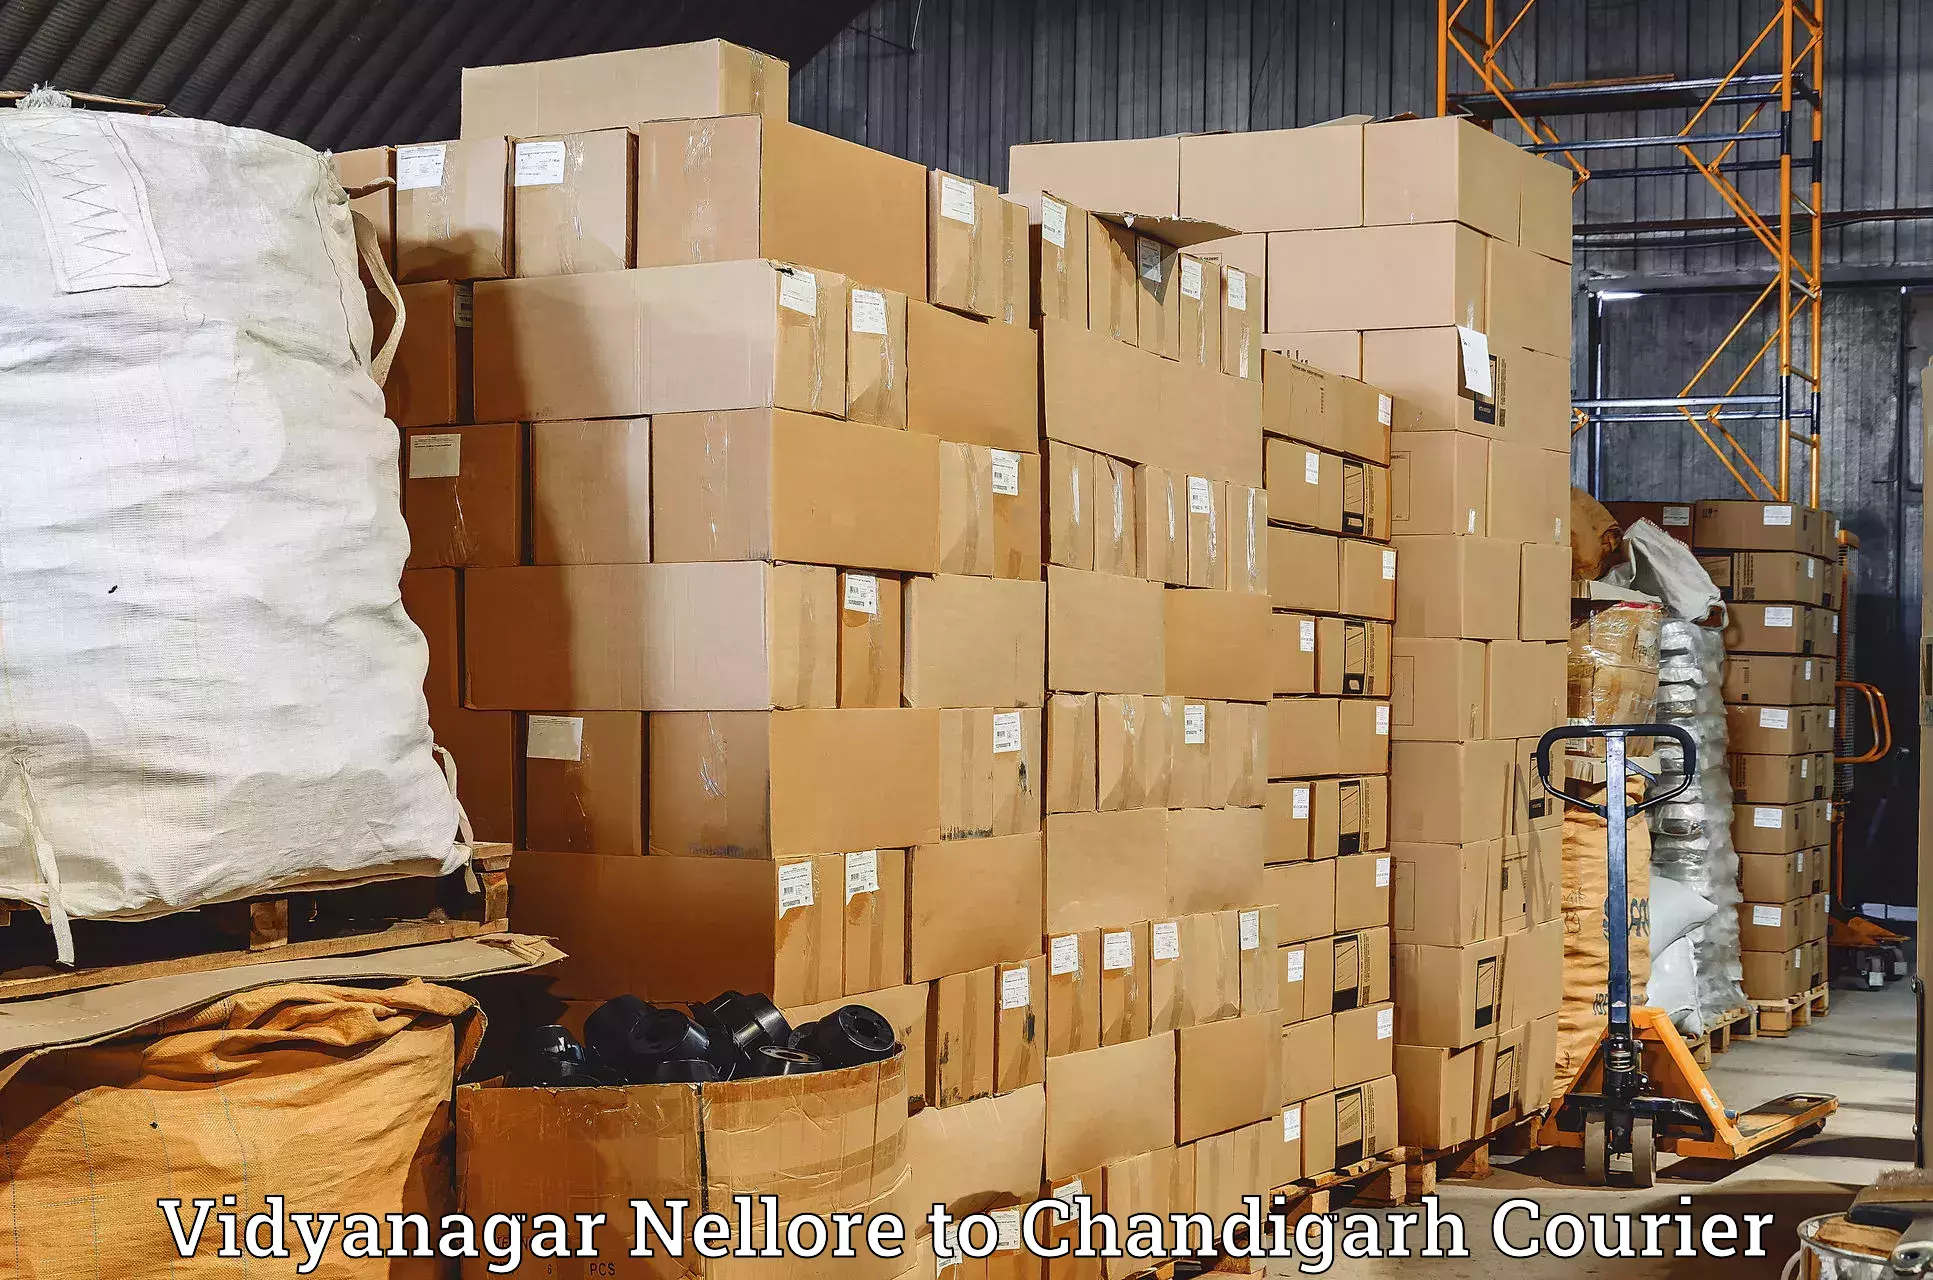 Customer-oriented courier services Vidyanagar Nellore to Chandigarh